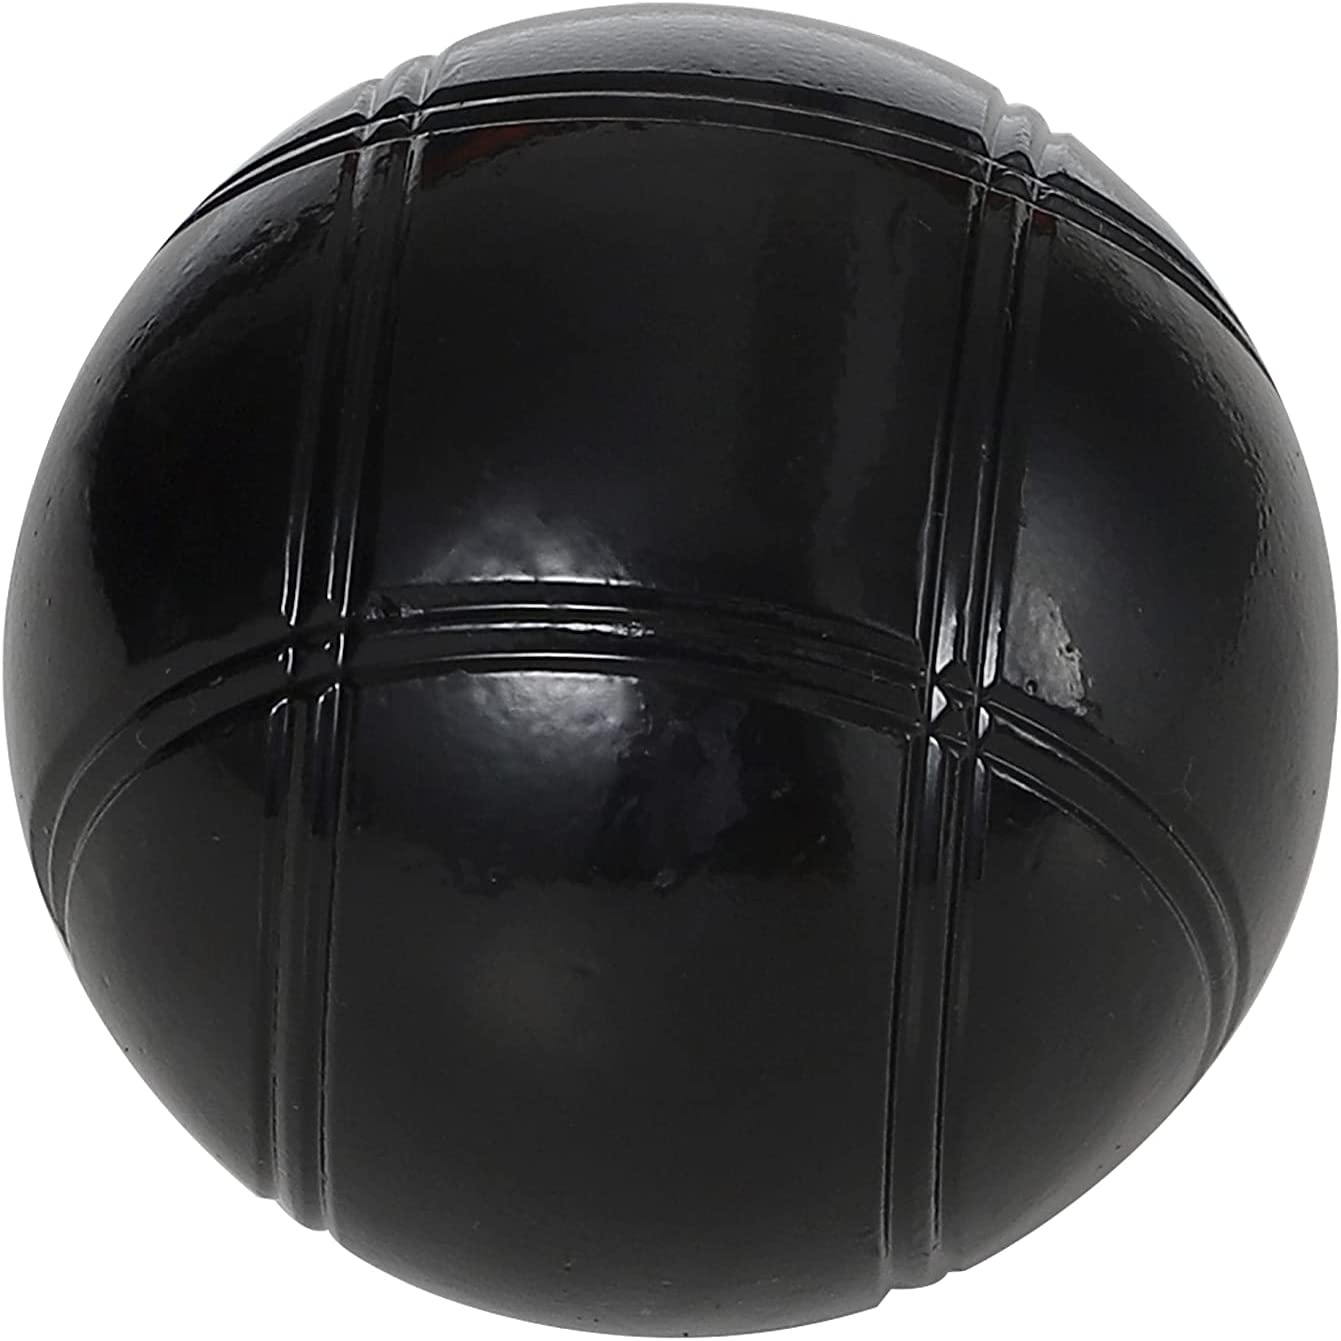 6 Boules Petanque Bowls Set Luxury Polished Black